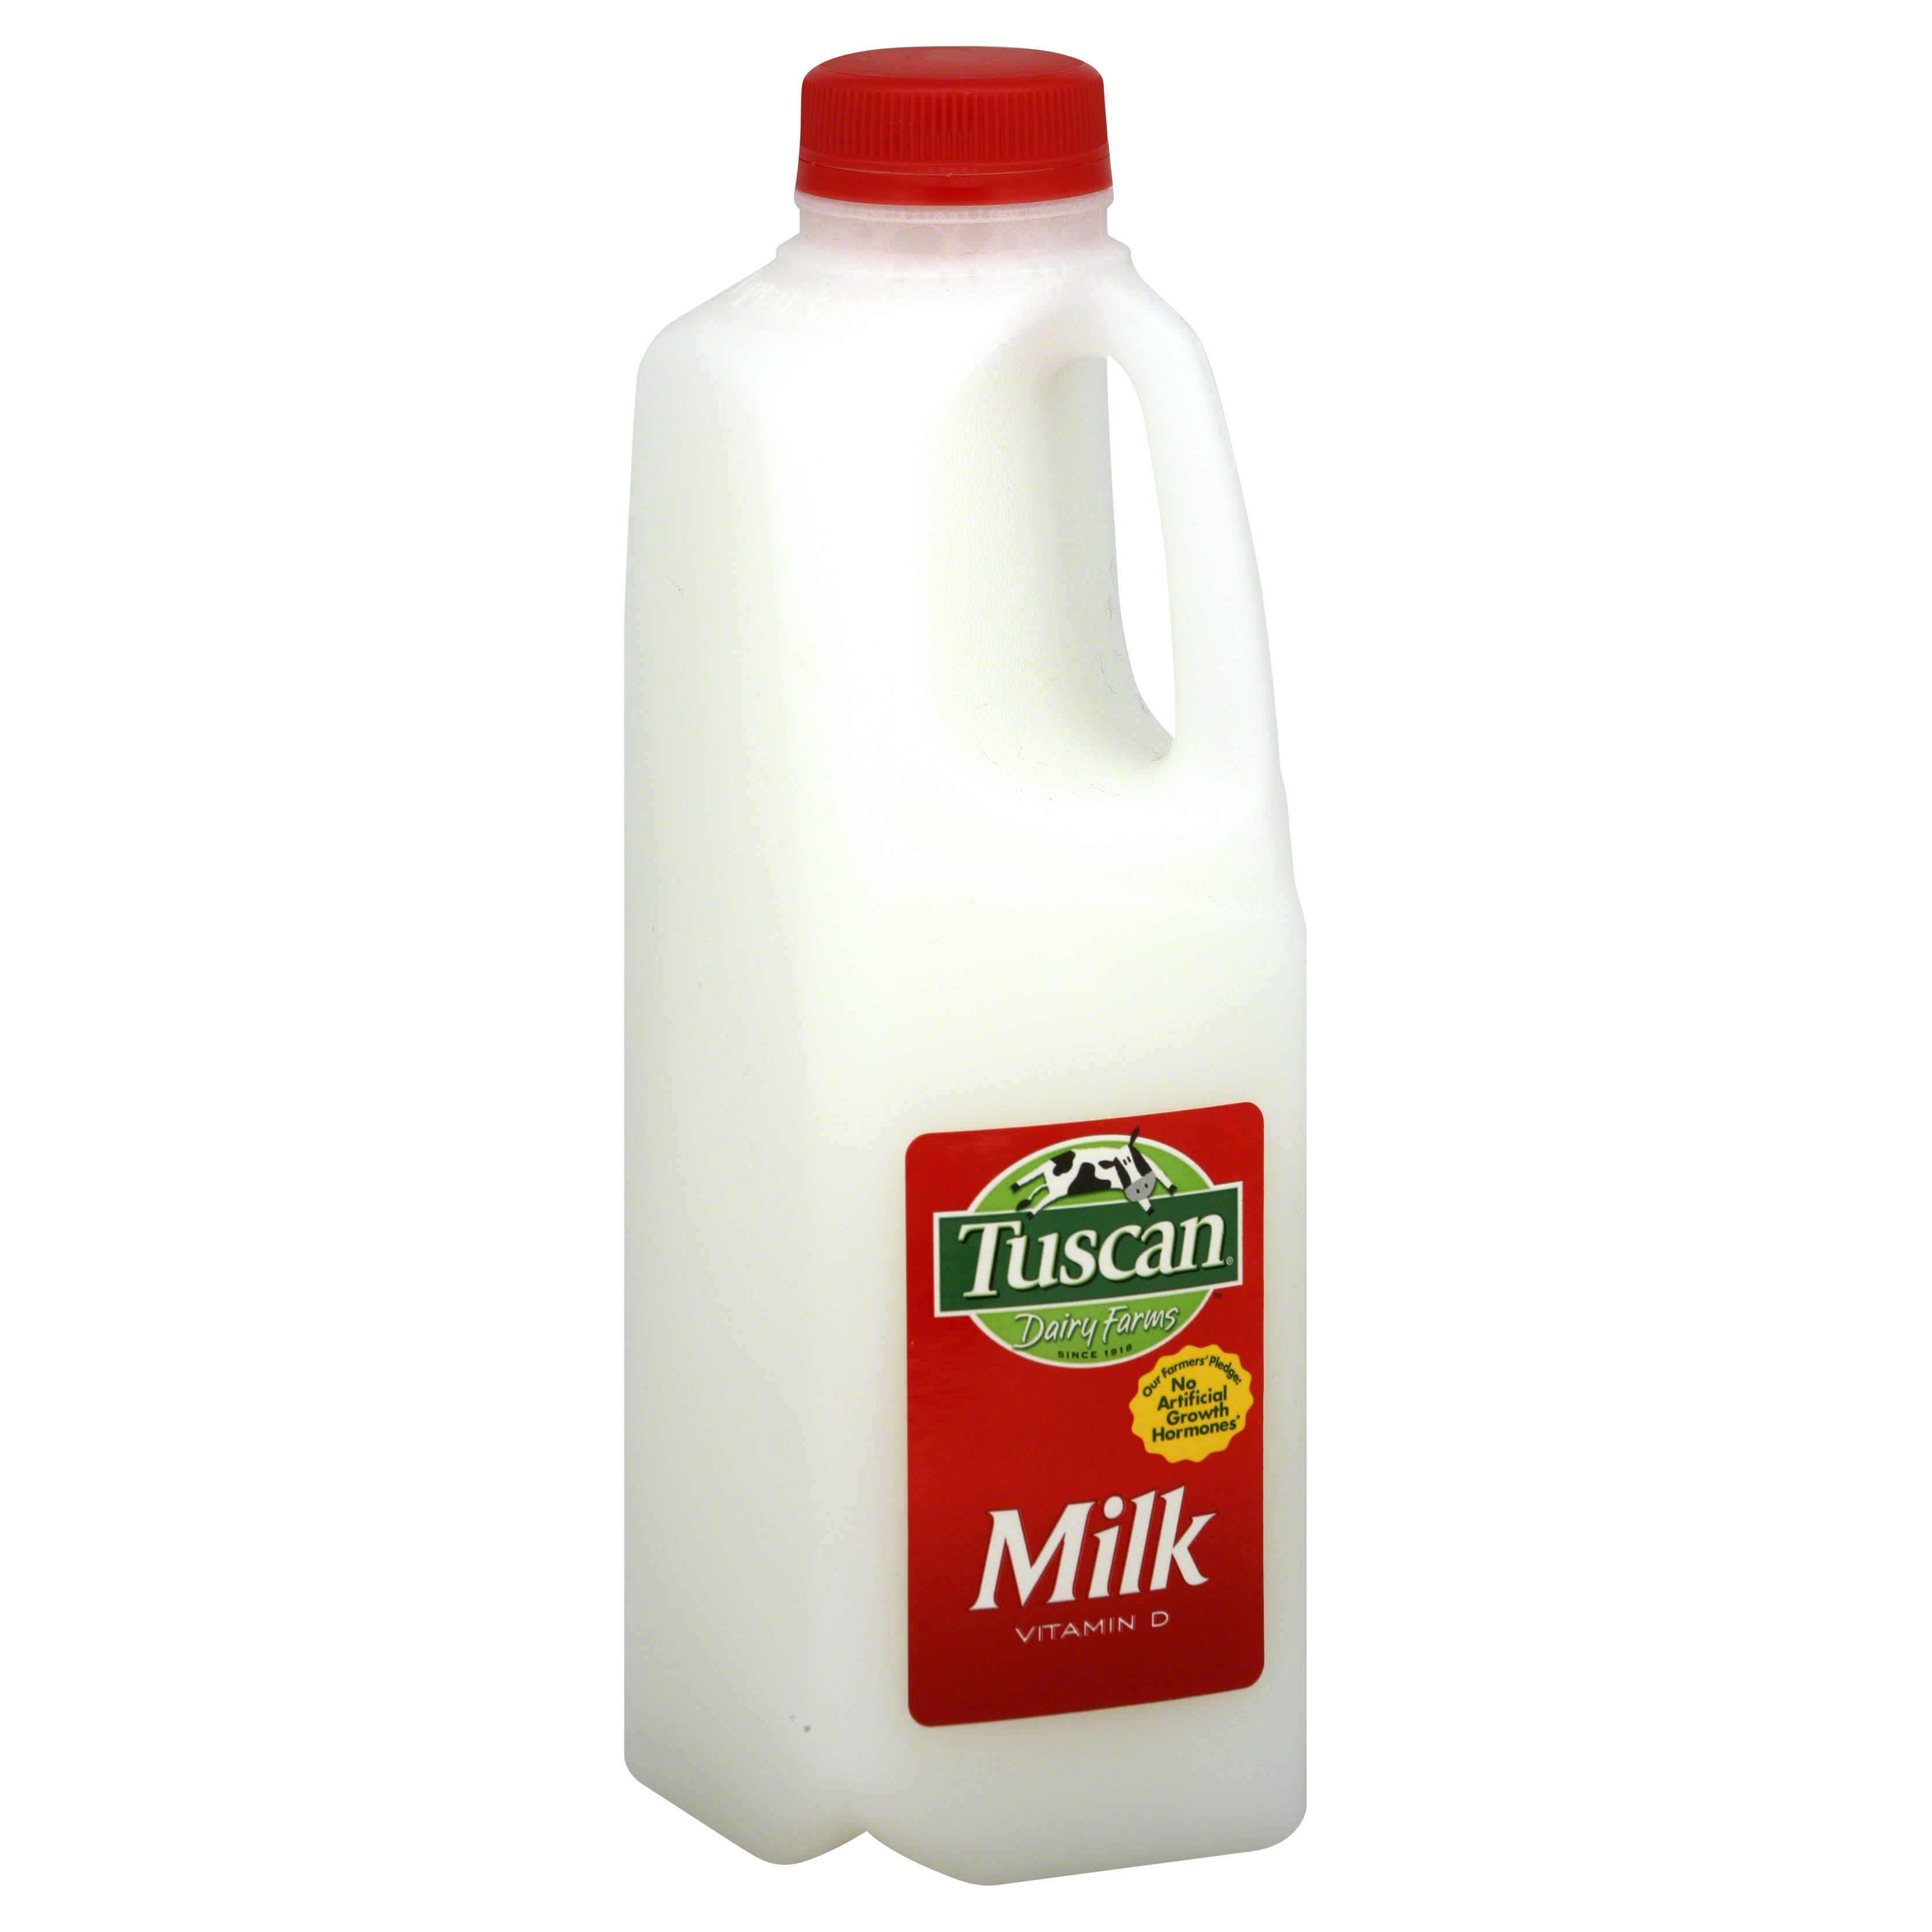 Tuscan Milk, Vitamin D - 1 qt